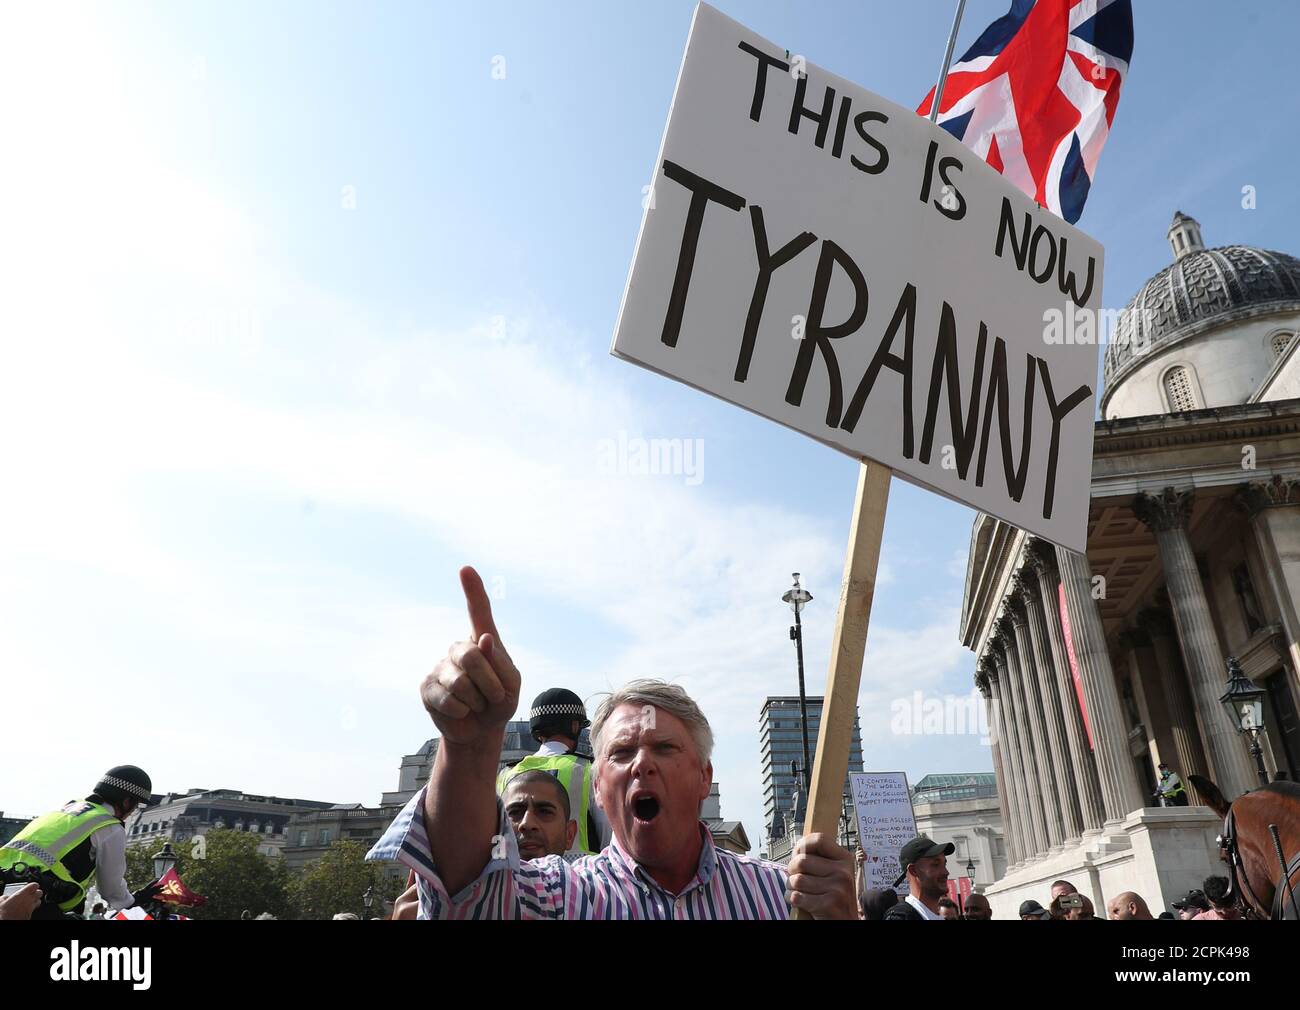 Manifestants lors d'une manifestation anti-vax à Trafalgar Square à Londres. Banque D'Images